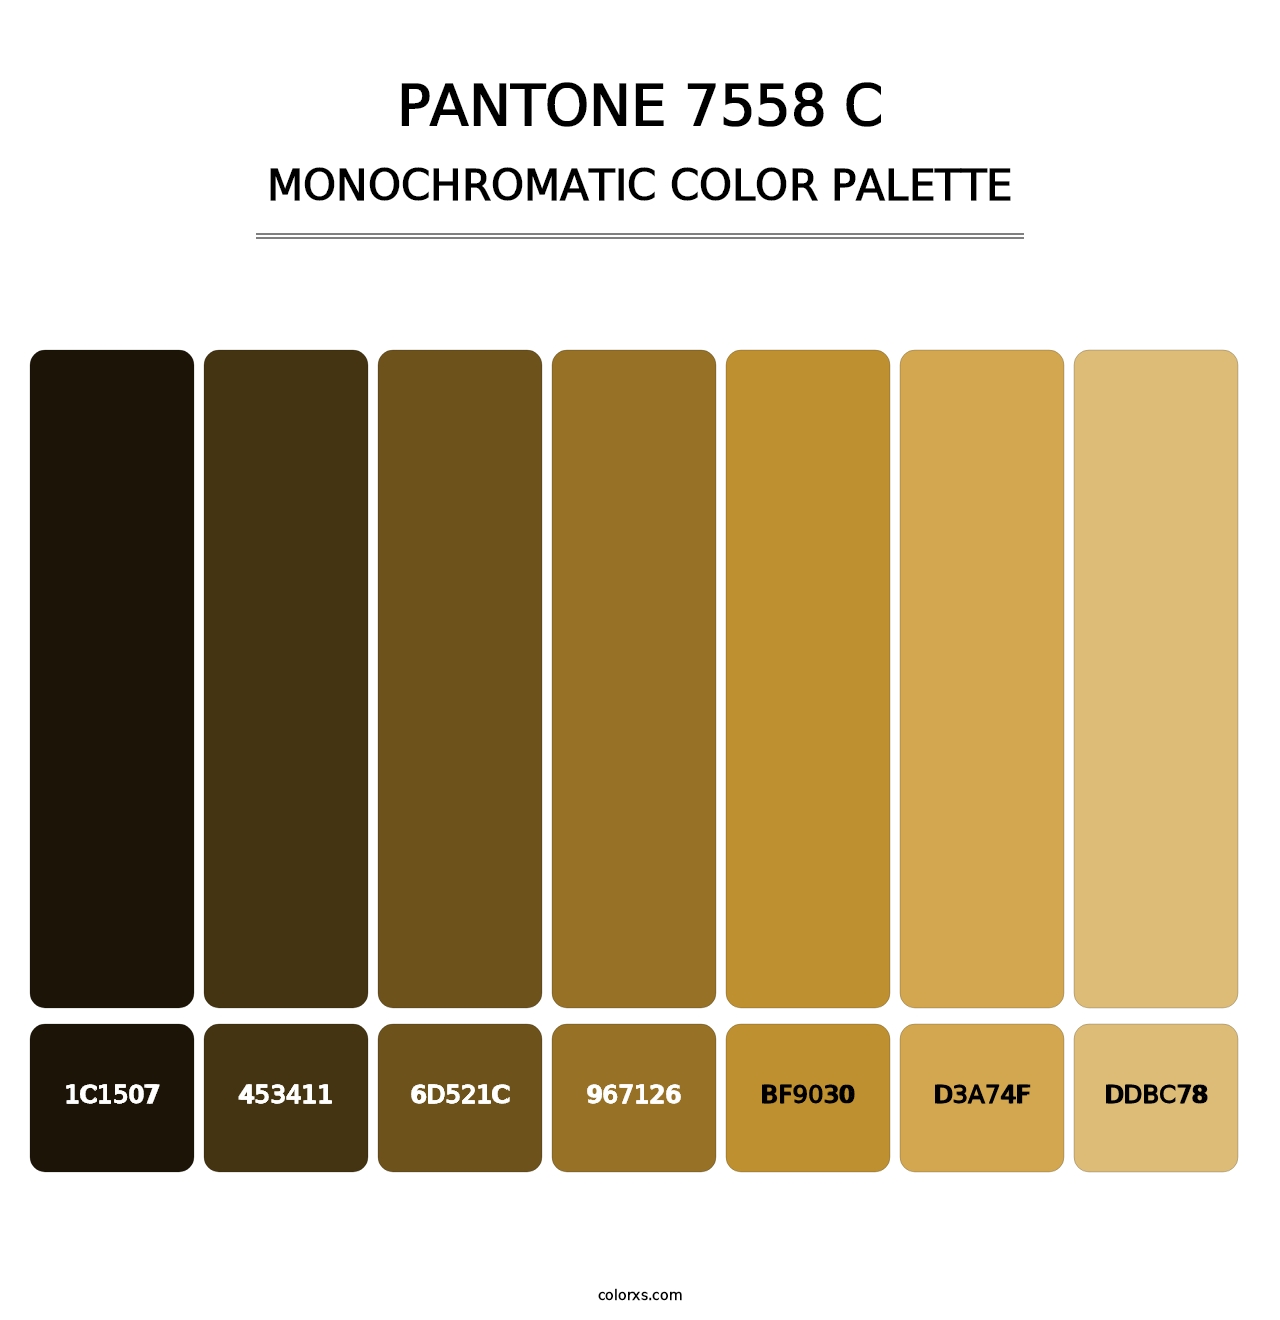 PANTONE 7558 C - Monochromatic Color Palette